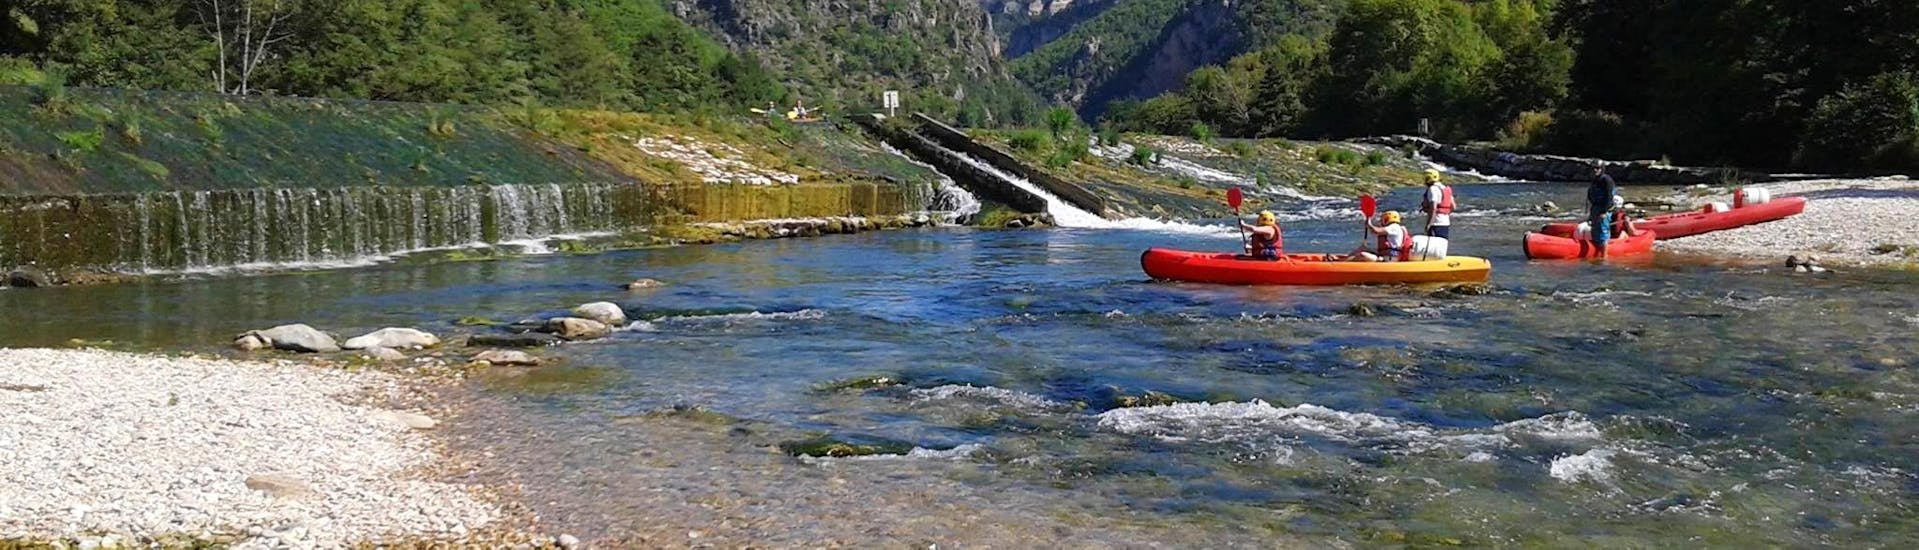 Eine Gruppe von Freunden vergnügt sich auf dem Wasser während ihres Kanuverleihs auf dem Fluss Tarn - Entdeckungstour 7 km mit Canoë Aigue Vive Gorges du Tarn.